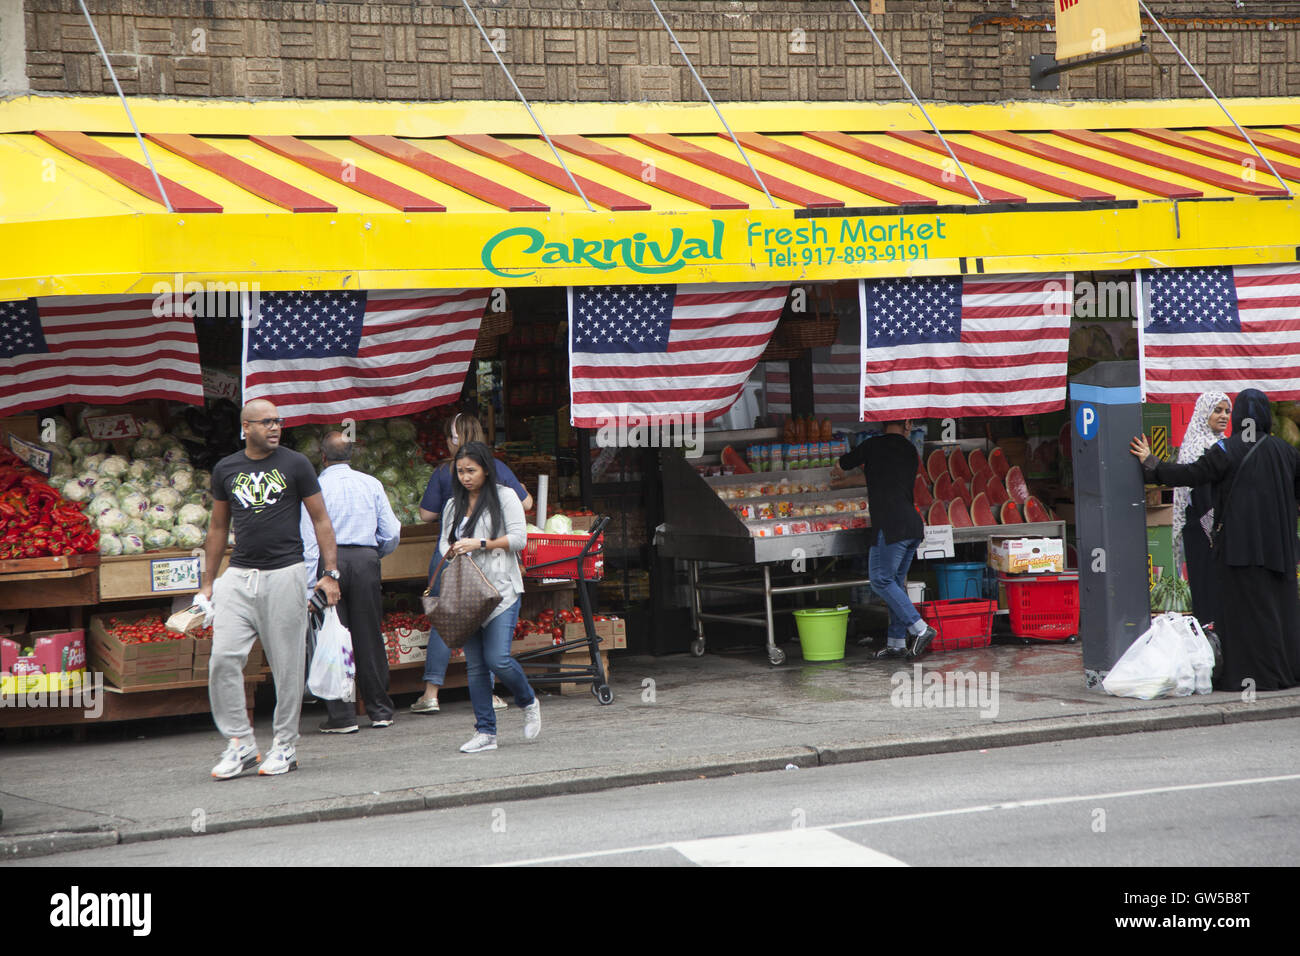 Marché de carnaval des drapeaux américains s'affiche comme un signe de patriotisme dans ce quartier d'immigrants de Kensington, Brooklyn, New York. Banque D'Images